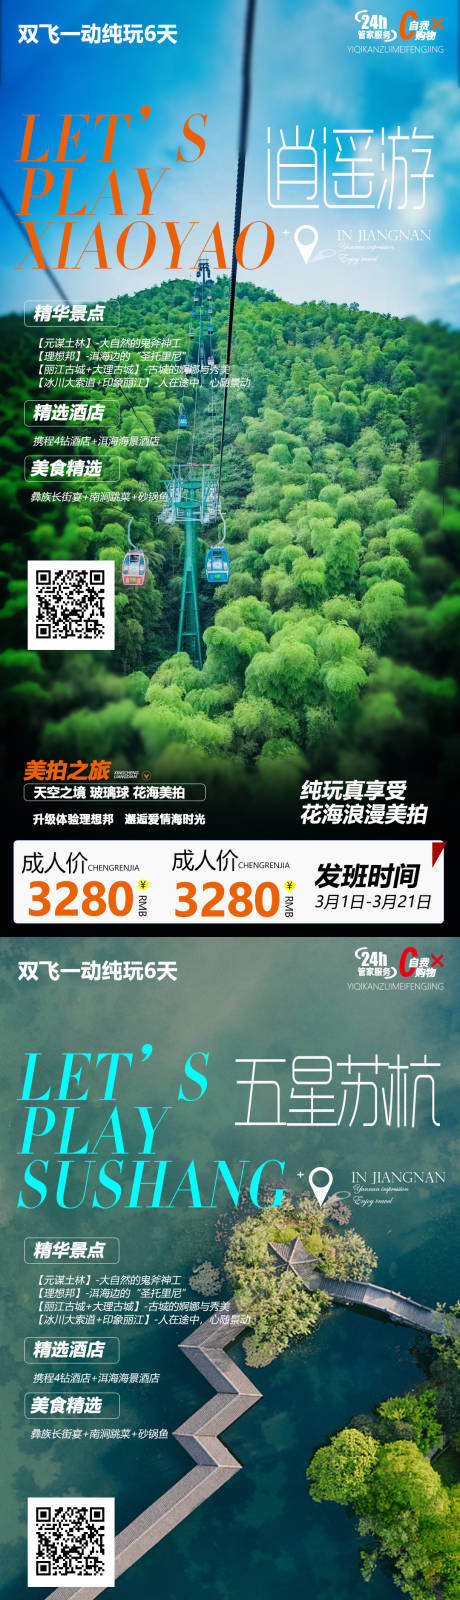 杭州苏州华东系列旅游海报